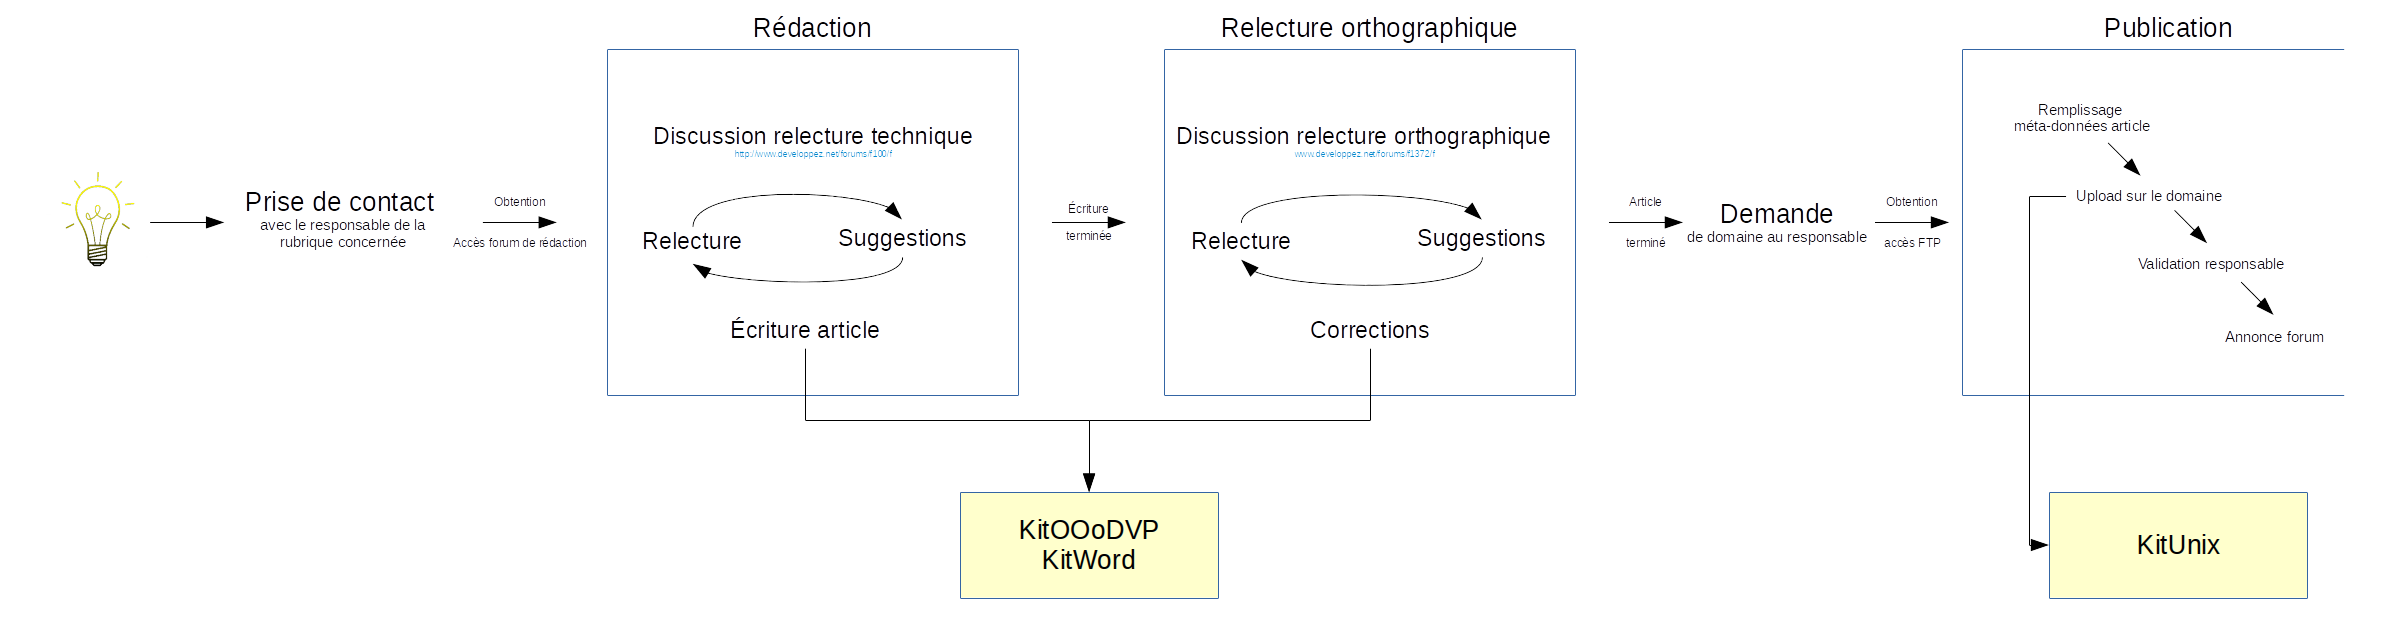 Schéma du processus de rédaction de Developpez.com